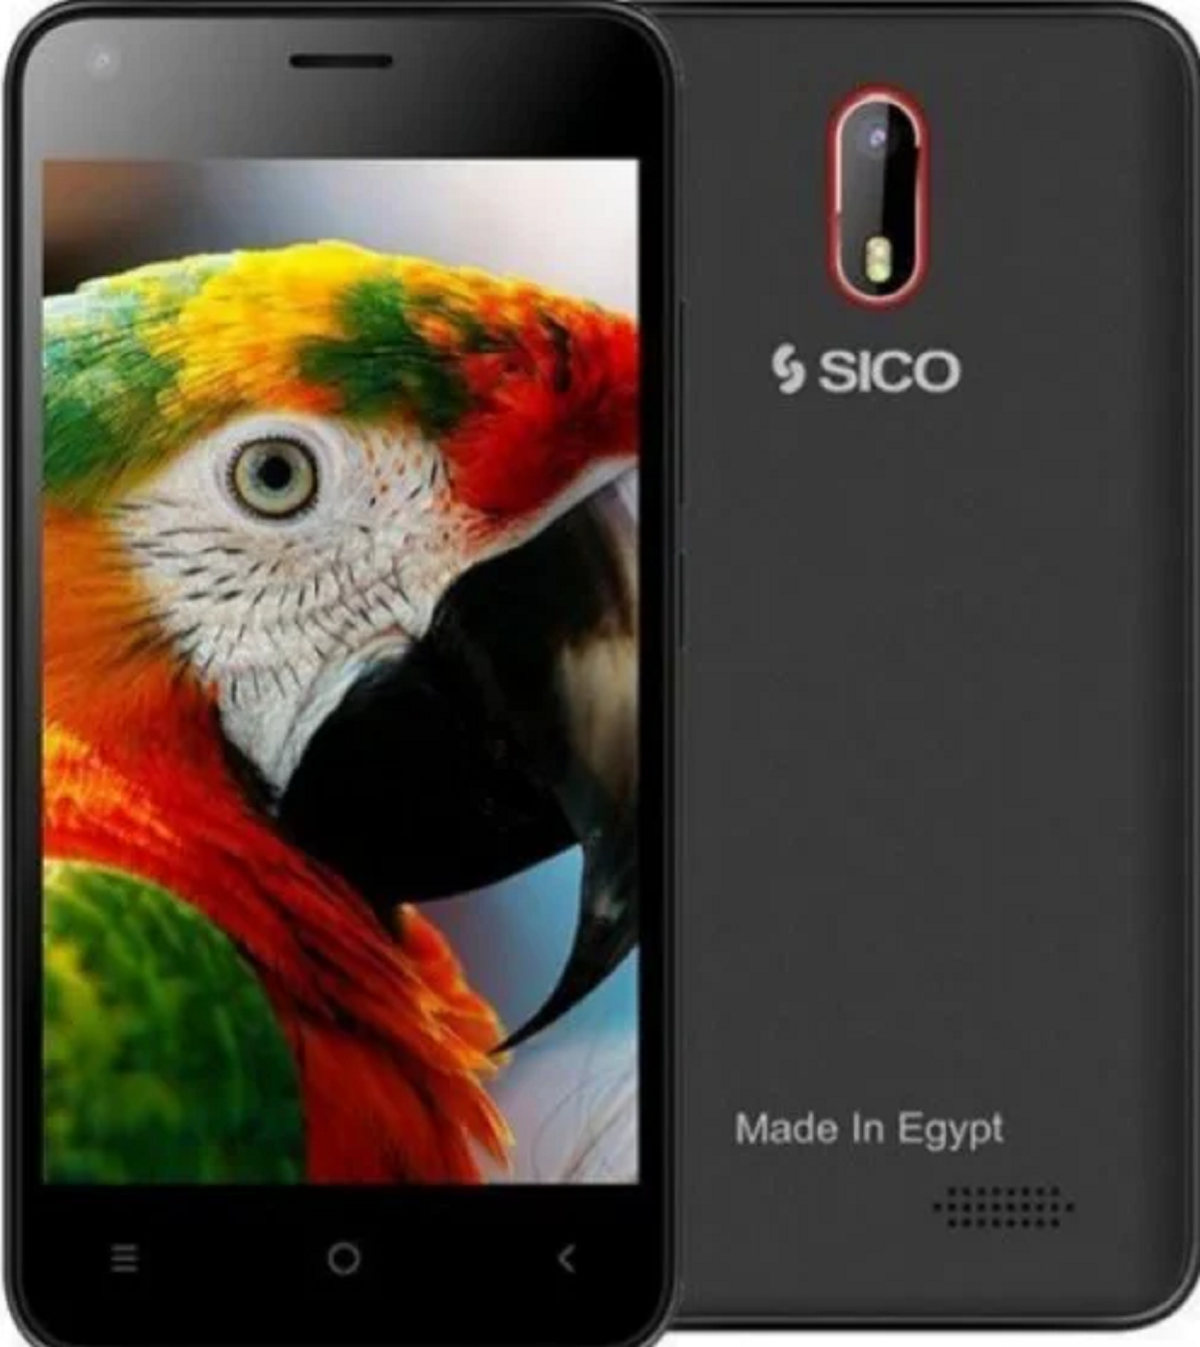 بـ 500 جنيه فقط.. هاتف Sico More 3 الذكي بمميزات رائعة أرخص محمول ذكي في مصر.. صور